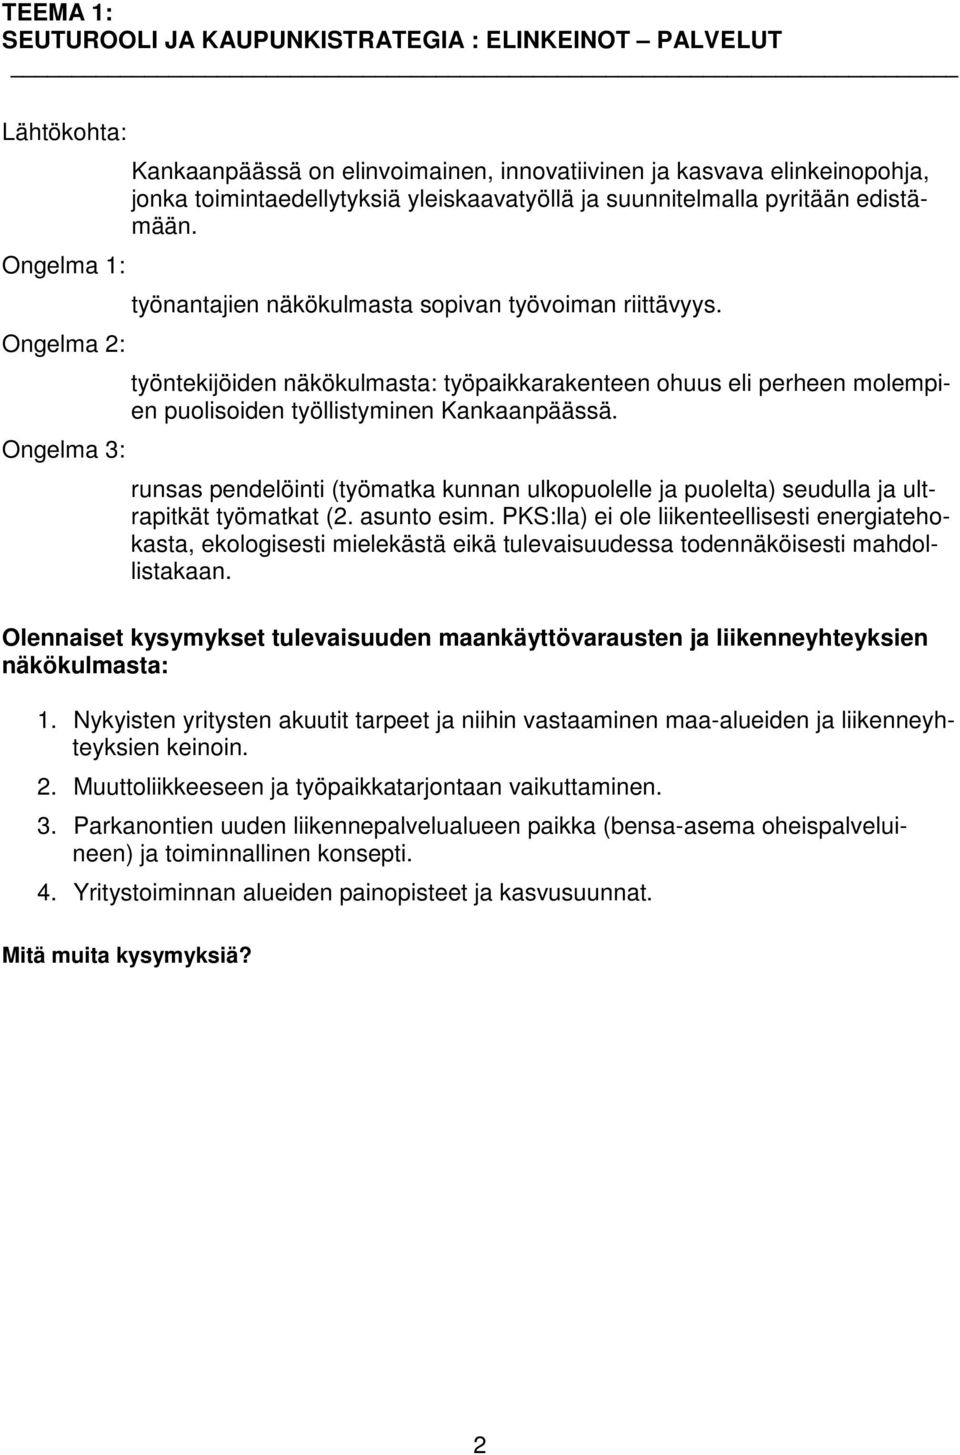 työntekijöiden näkökulmasta: työpaikkarakenteen ohuus eli perheen molempien puolisoiden työllistyminen Kankaanpäässä.